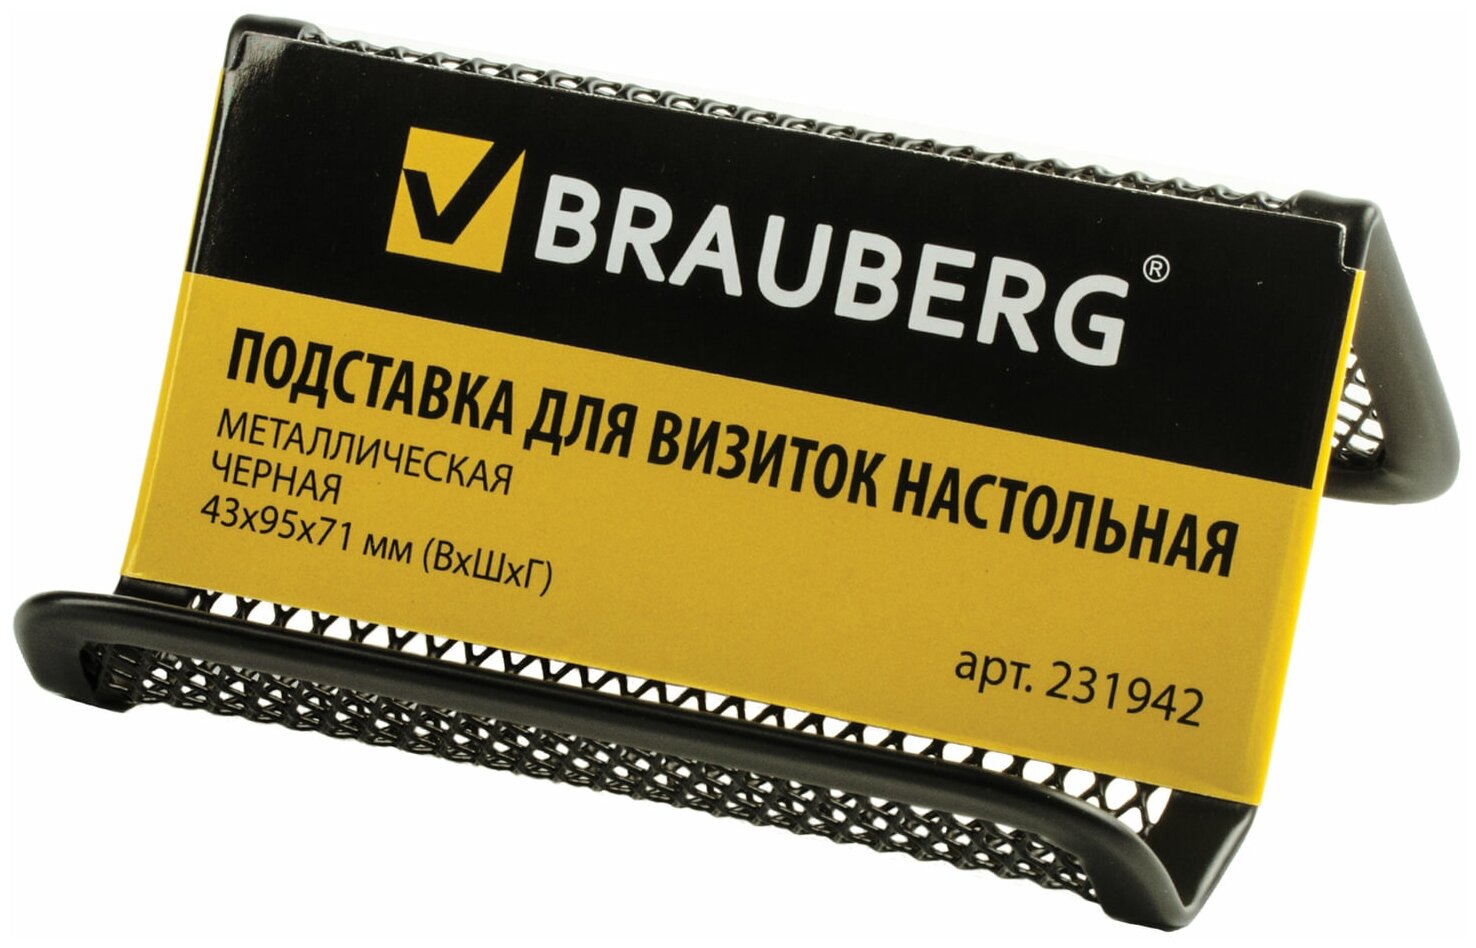 Подставка для визиток настольная BRAUBERG «Germanium», металлическая, 43×95×71 мм, черная, 231942 - фотография № 2